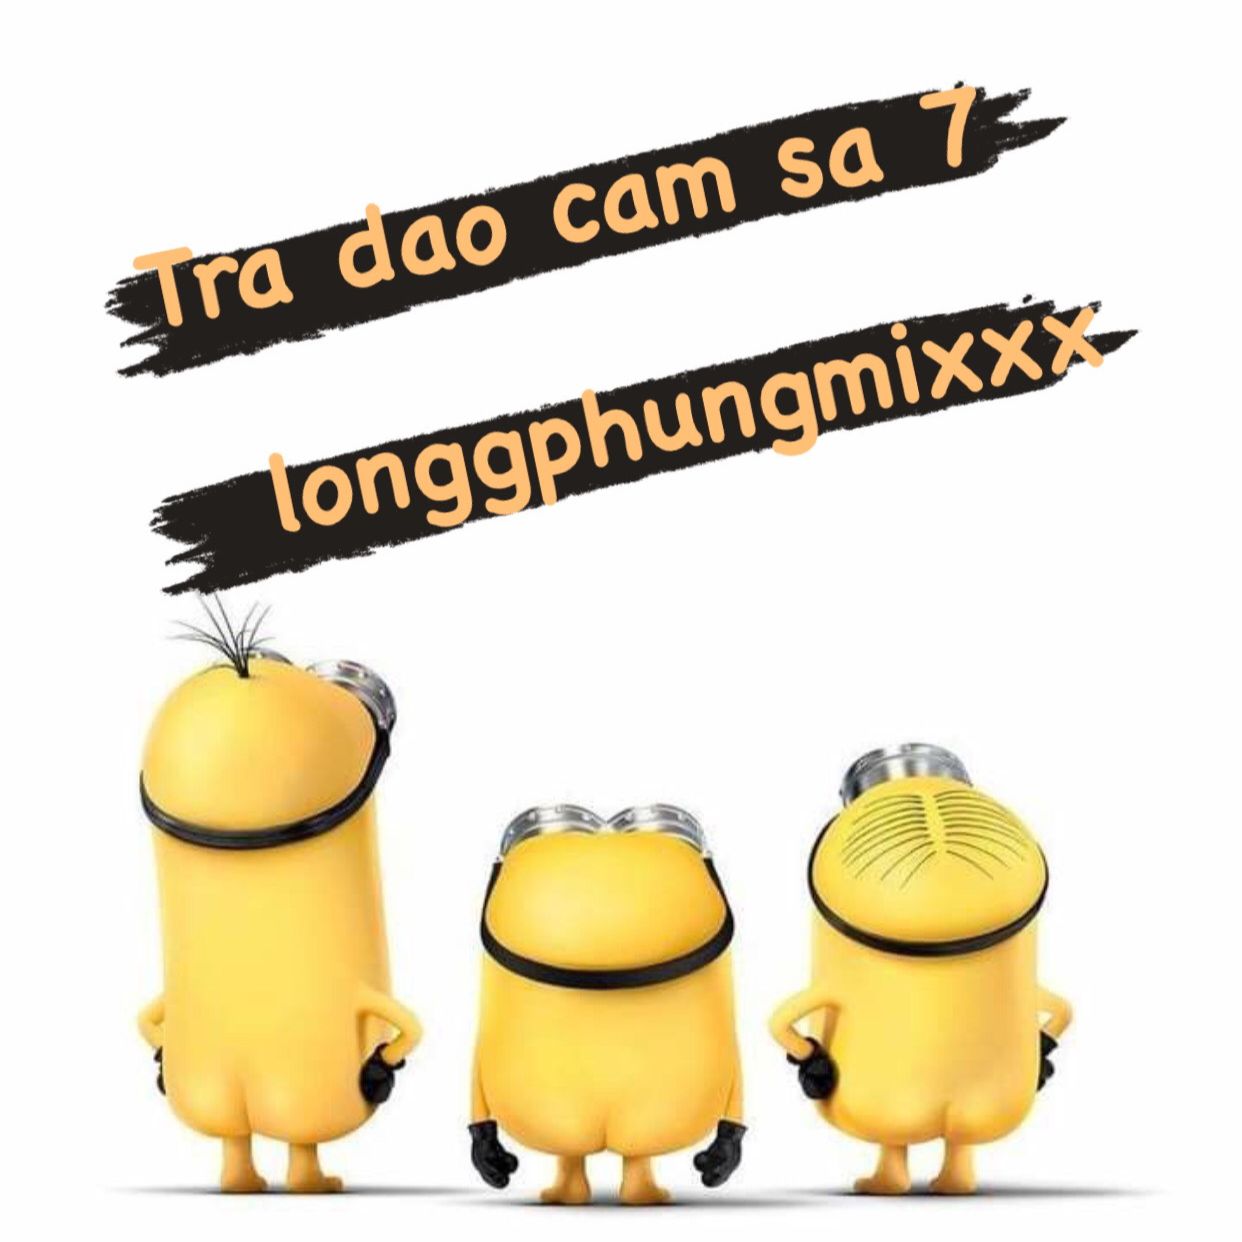 Pobierać Tra Dao Cam Sa 7 - 132 longgphungmixxx